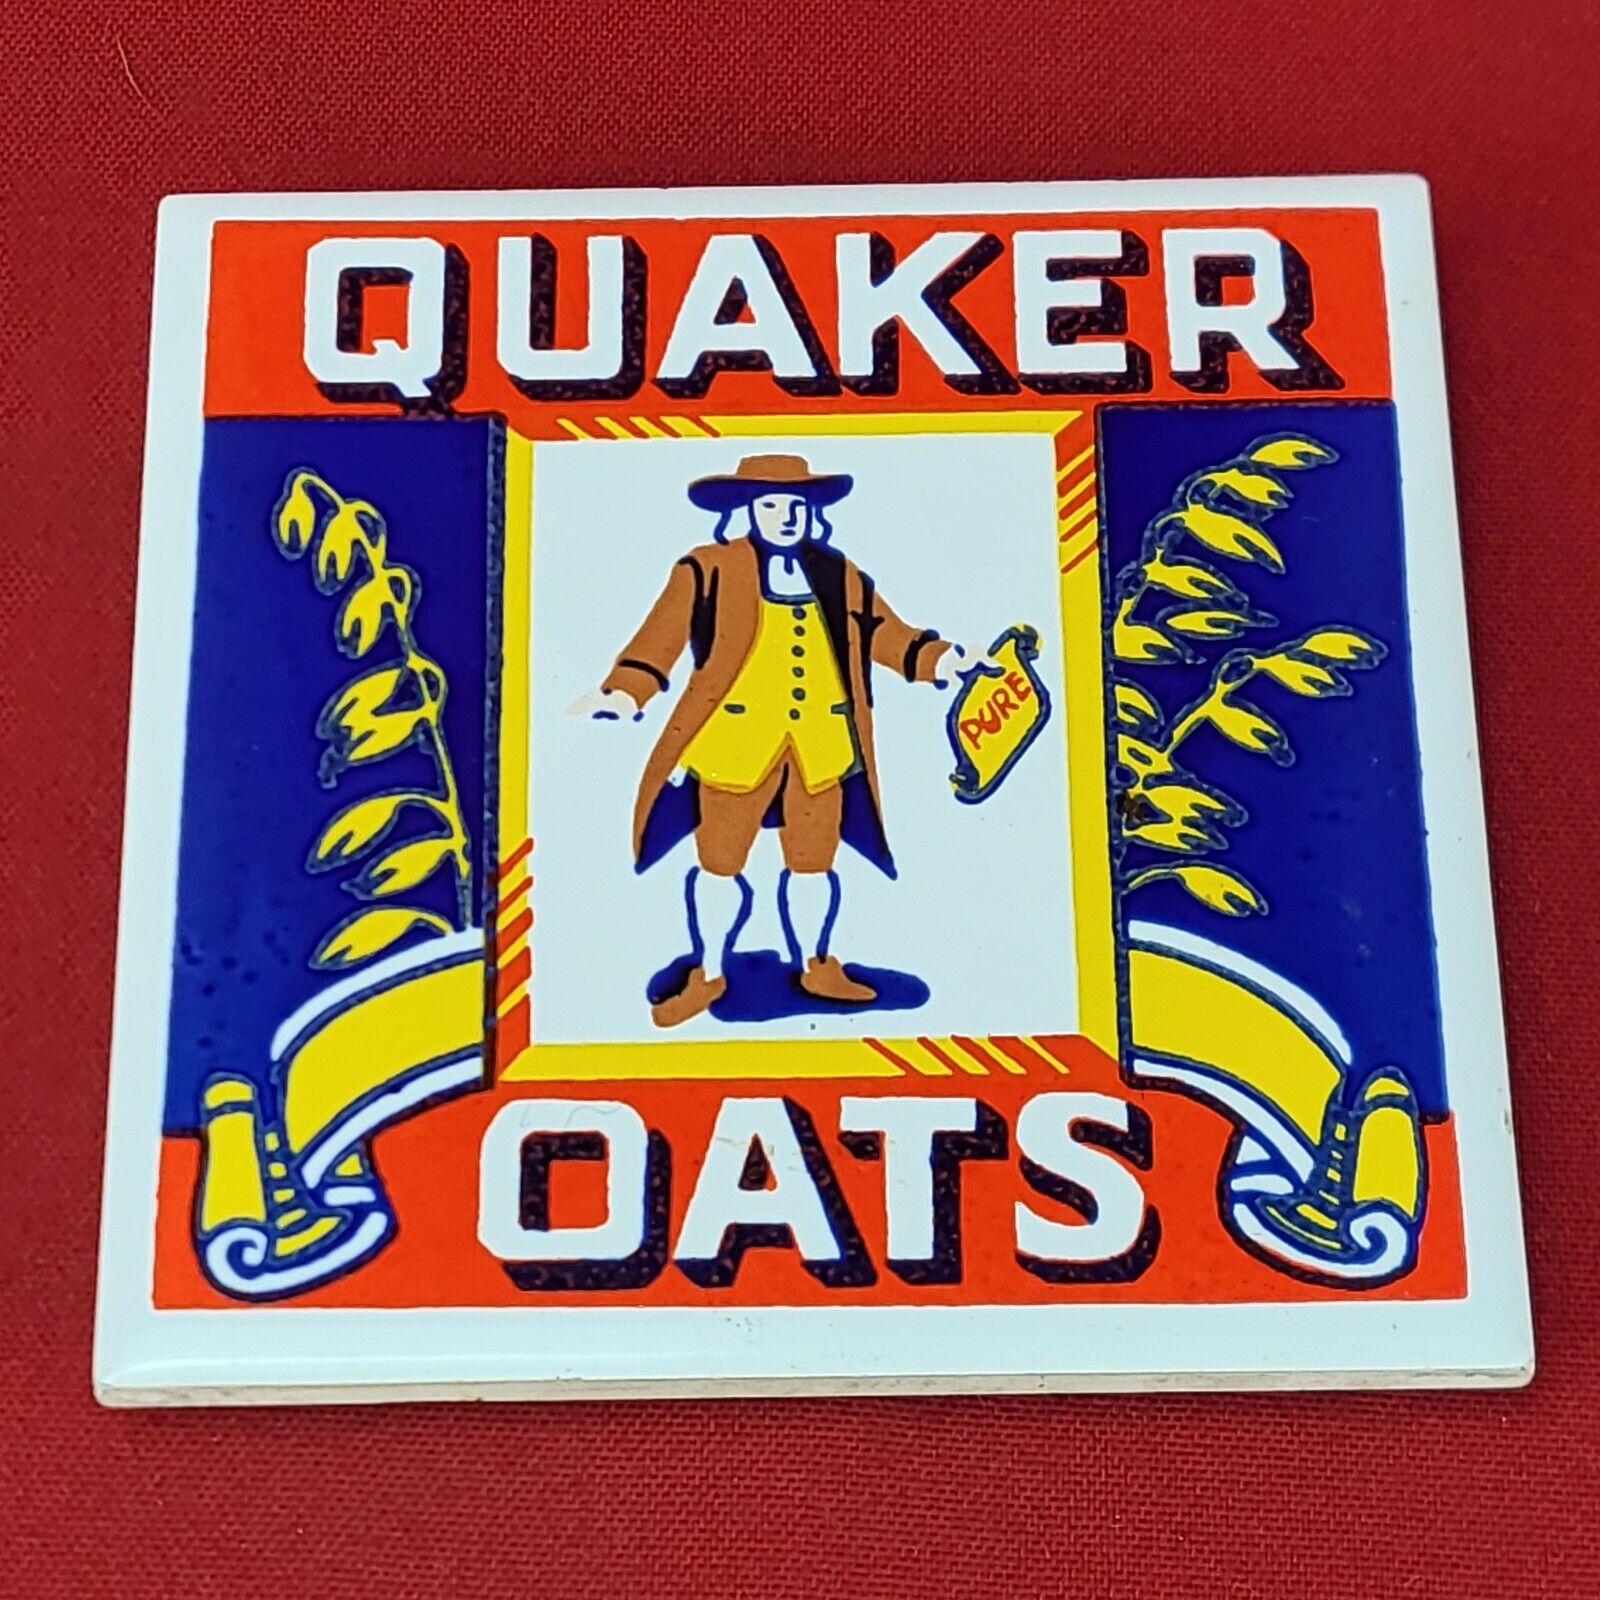 1983 Vintage Ceramic Tile Advertising Trivet for Quaker Oats